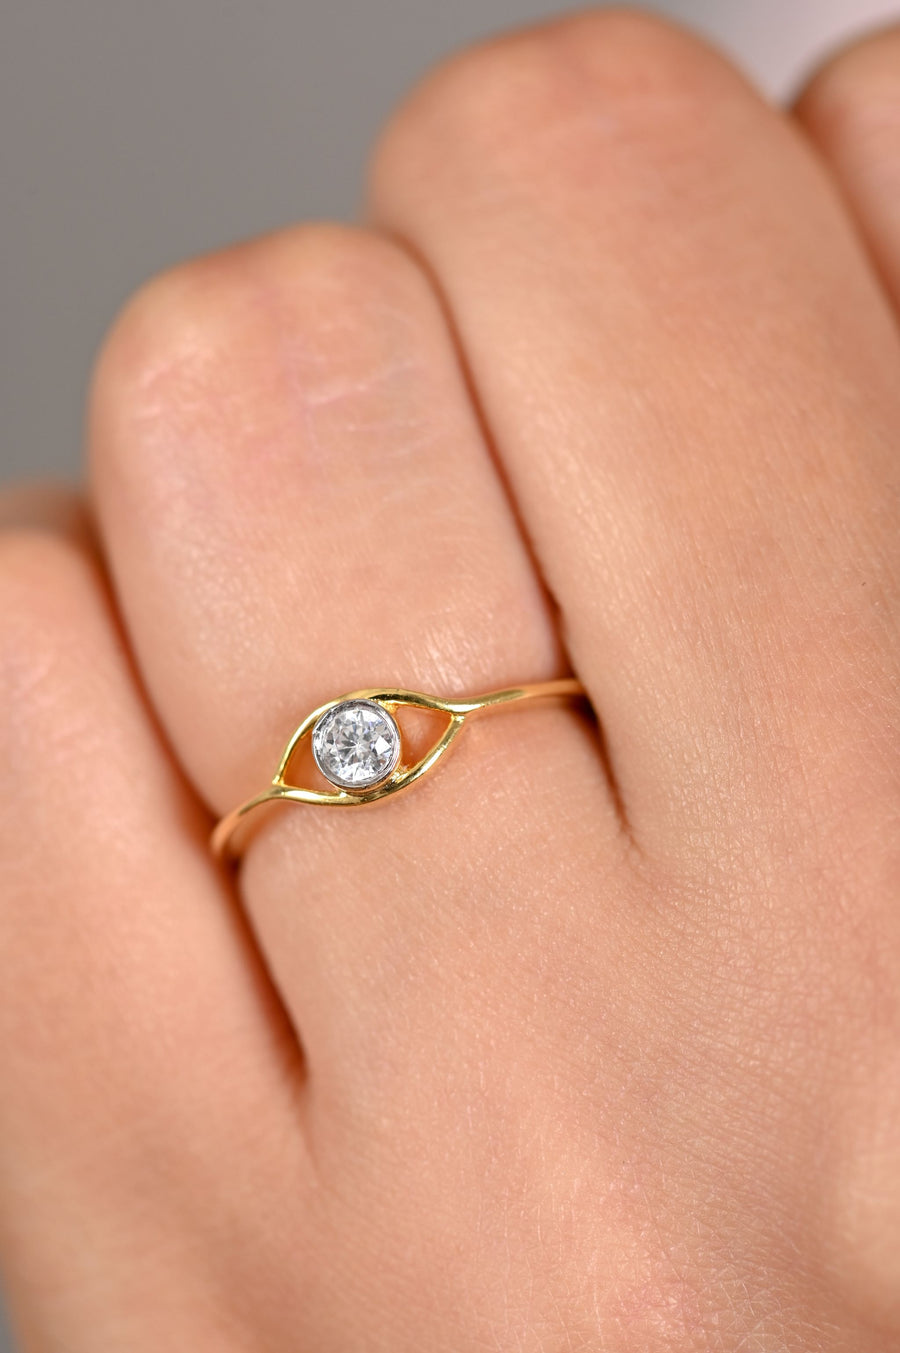 Buy Eye Gold Ring, Minimalist Ring, Evil Eye Ring, Dainty Gold Ring,  Delicate Ring, Thin Gold Ring, Simple Ring, Minimal Jewelry, Evil Eye  Online in India - Etsy